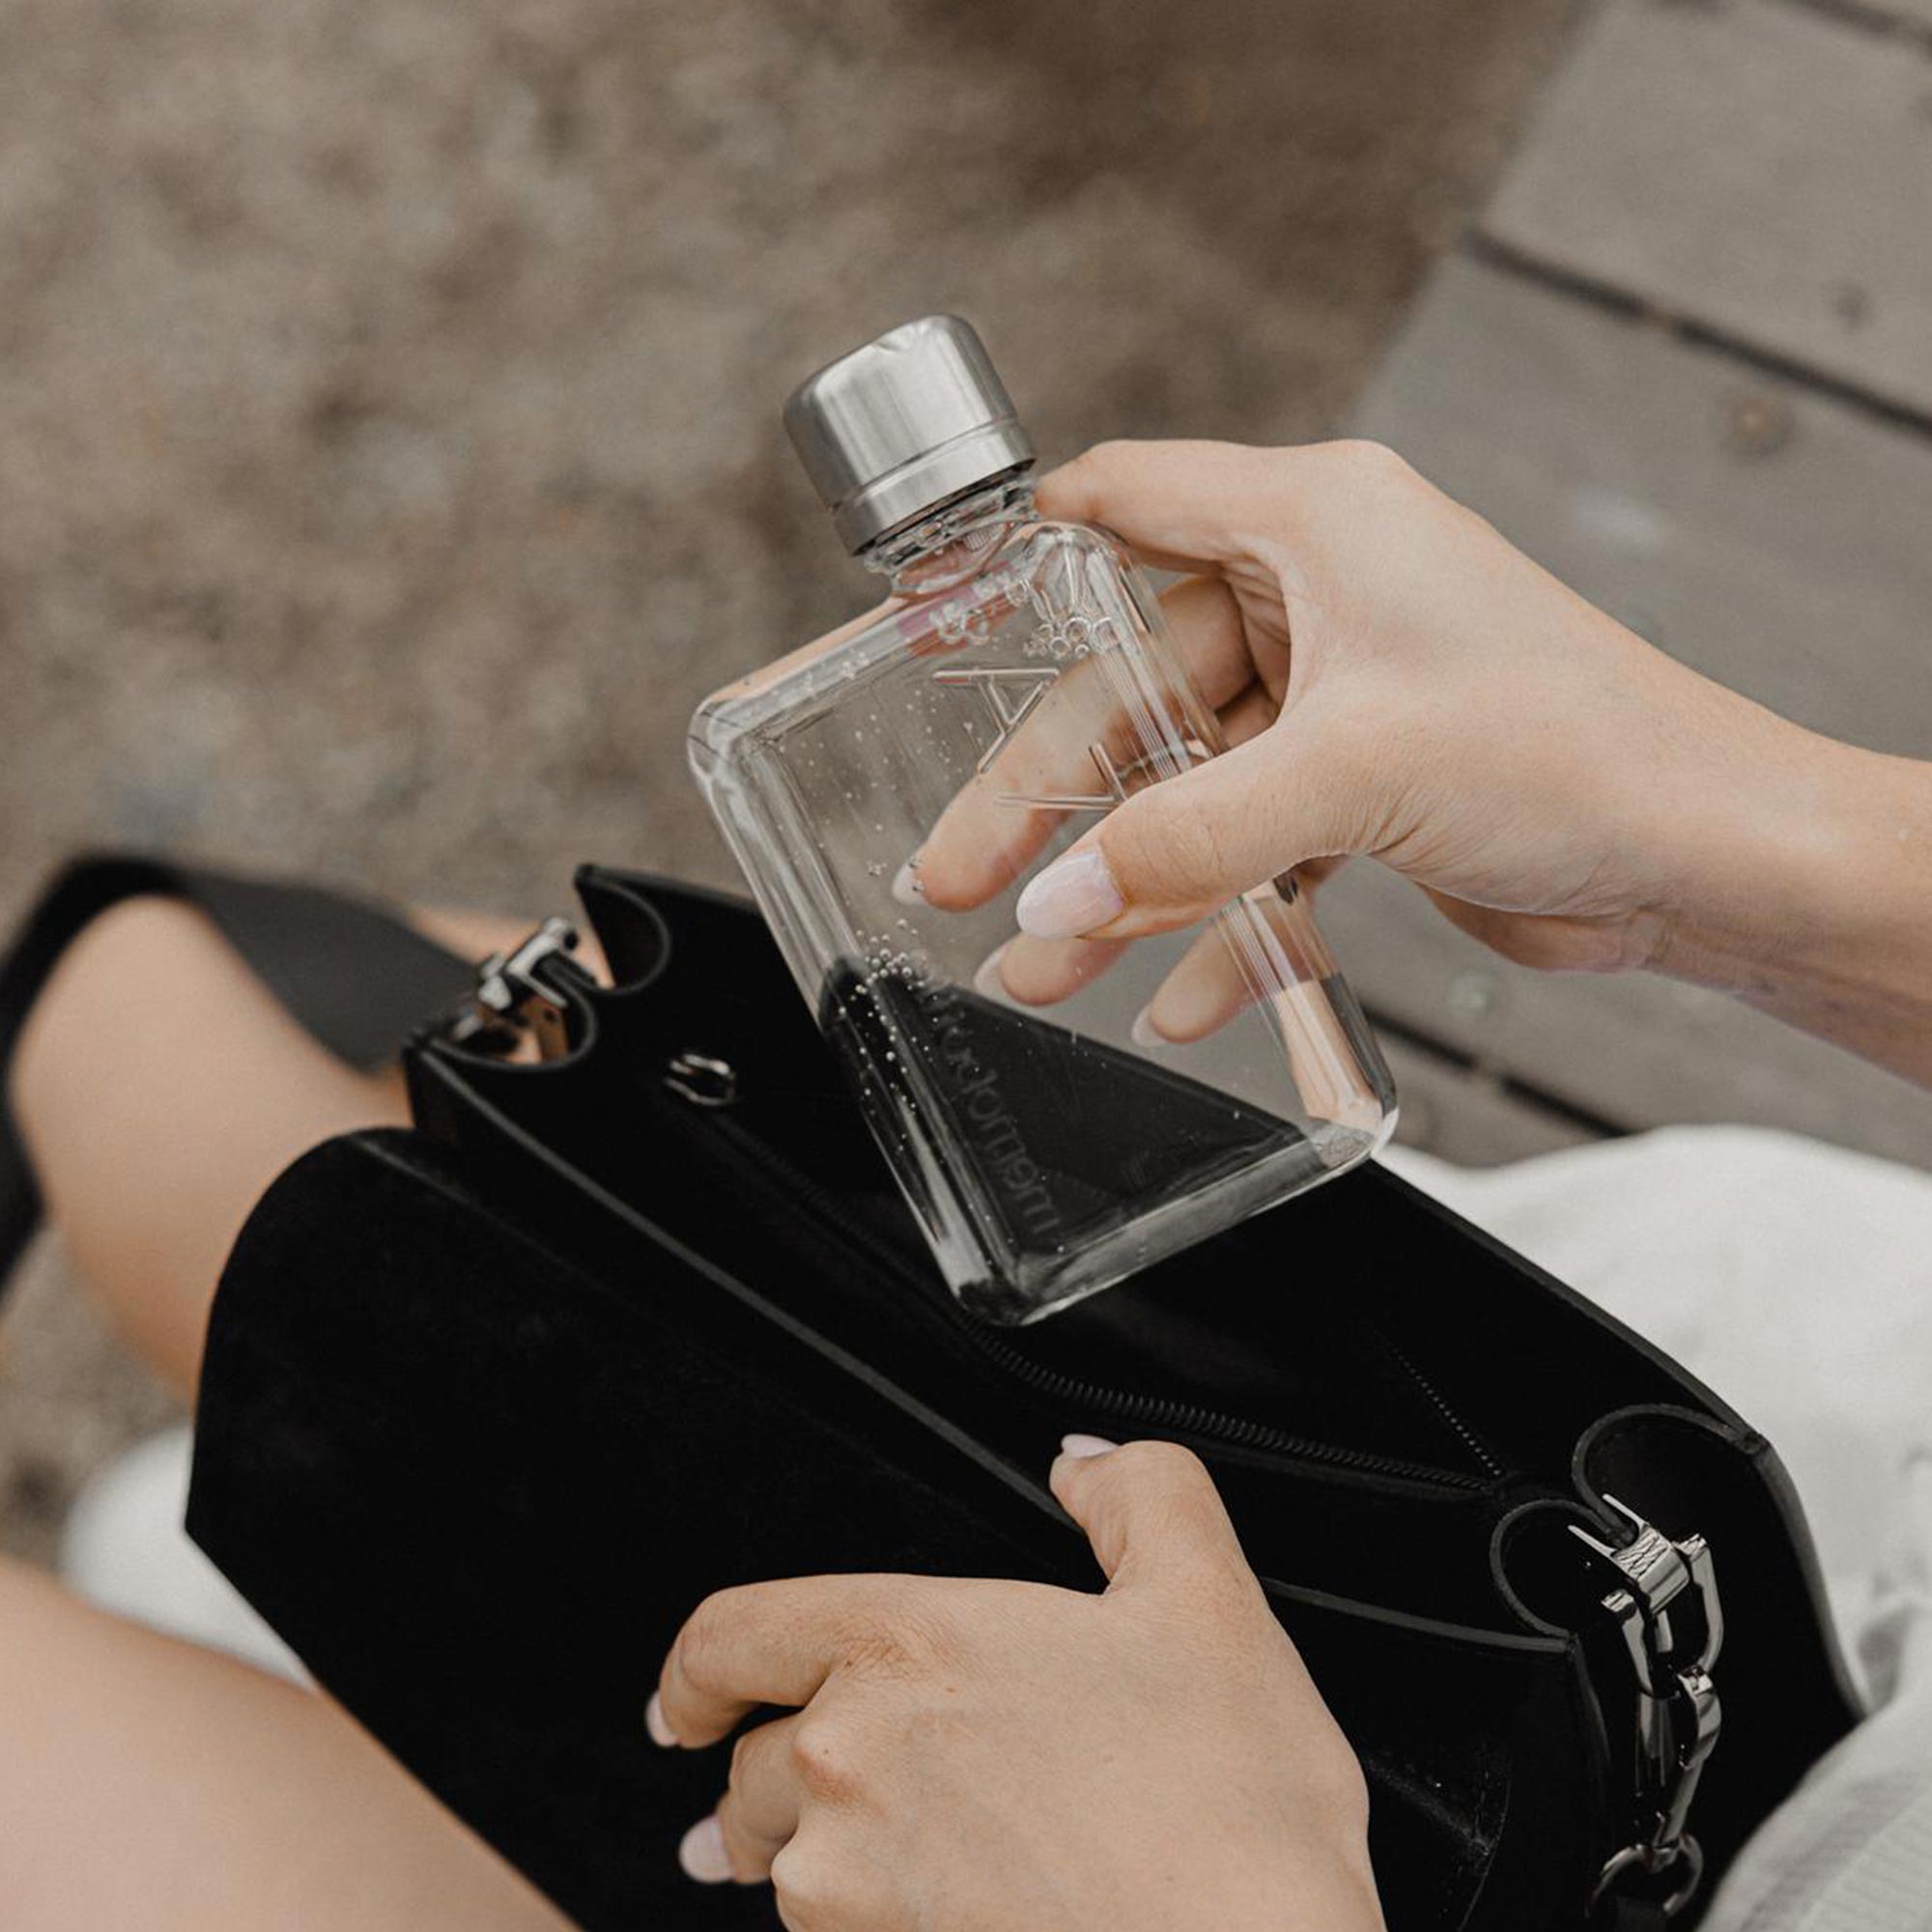 Memobottle Water Bottle: Slim & Reusable - Designed to Fit Your Bag